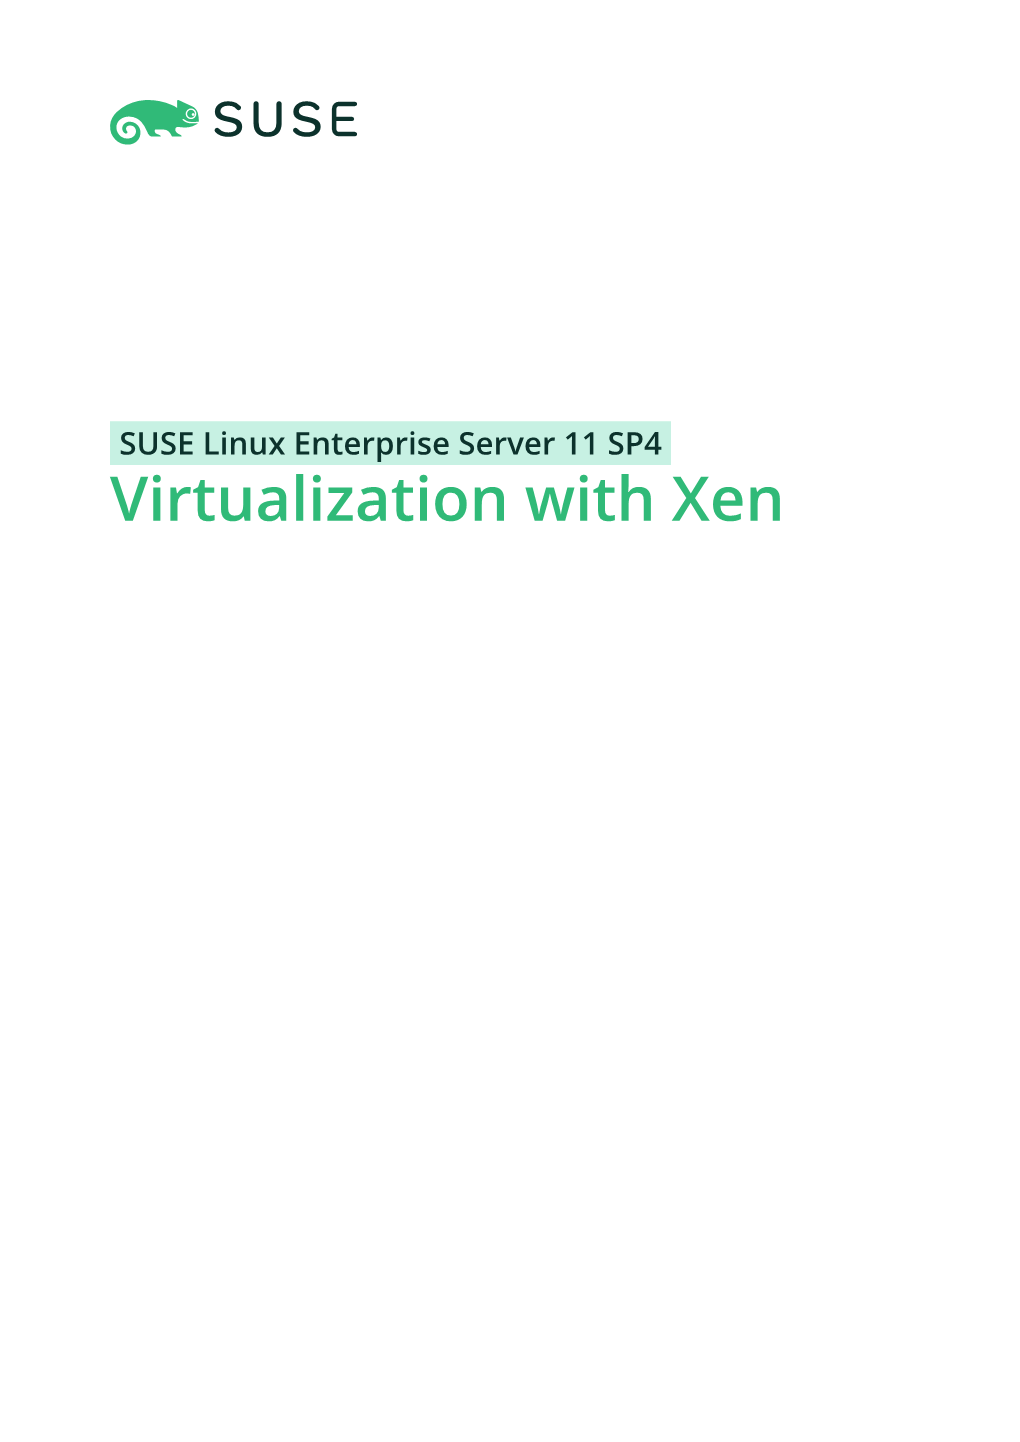 Virtualization with Xen Virtualization with Xen SUSE Linux Enterprise Server 11 SP4